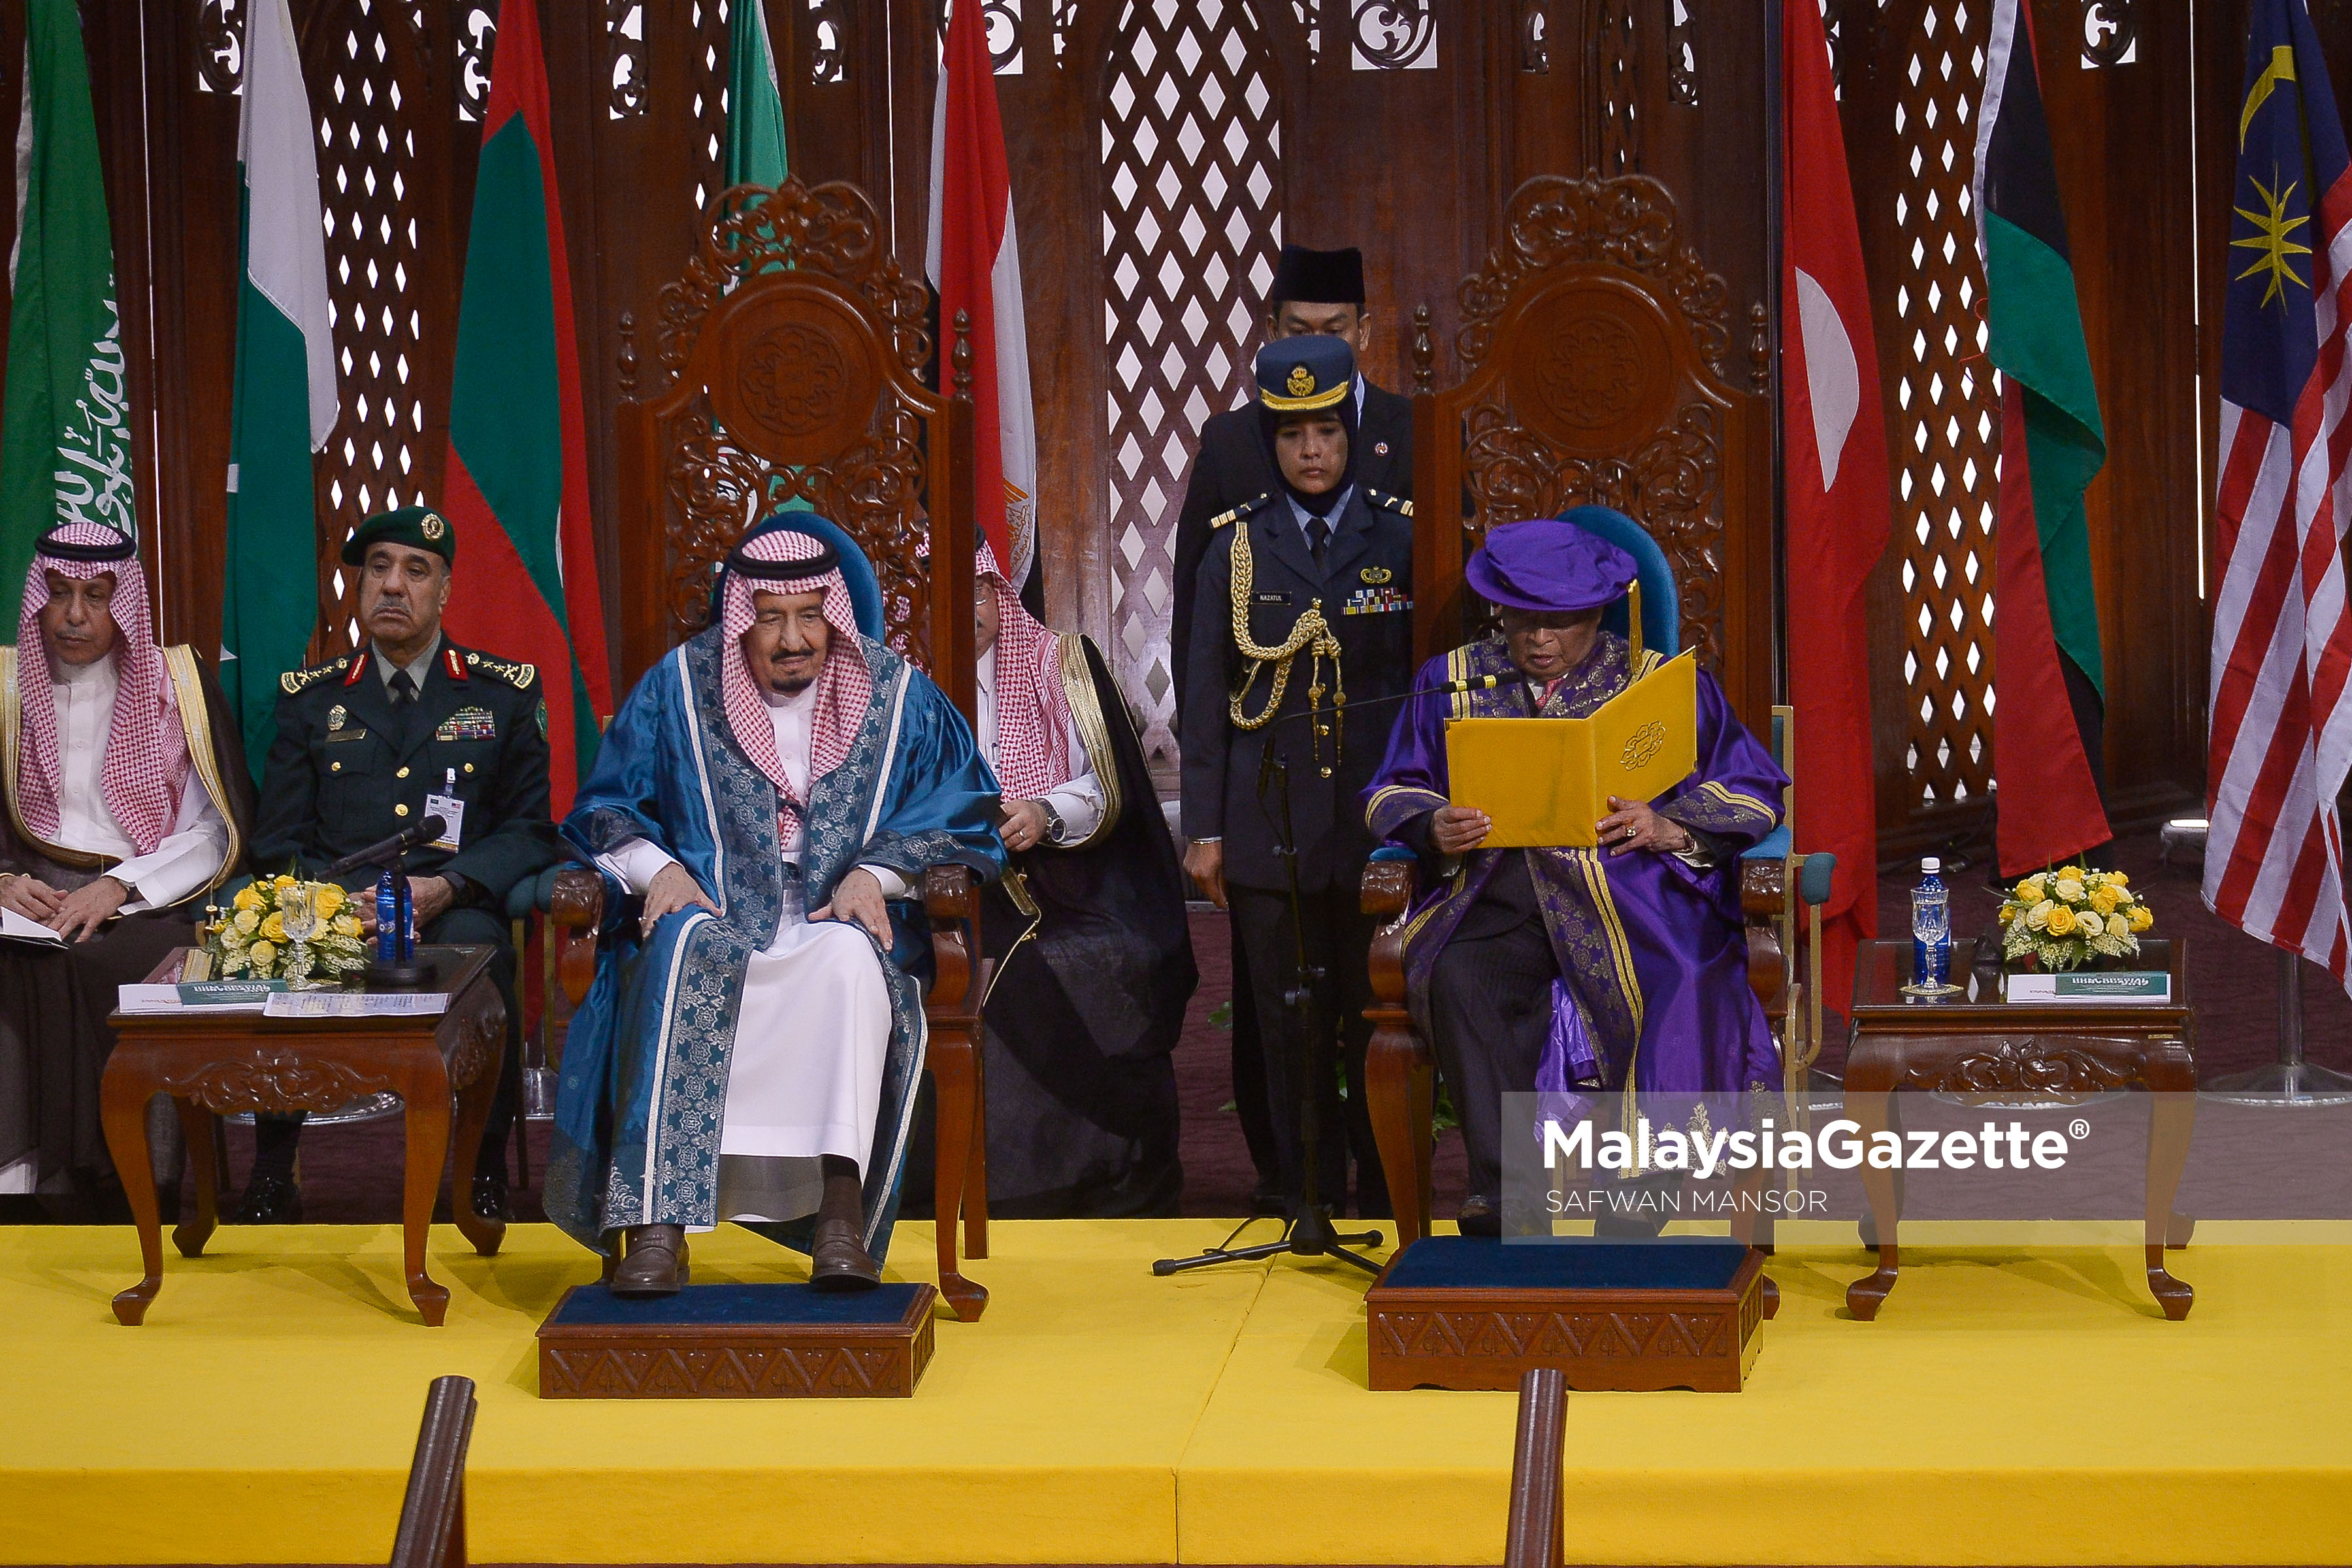 Sultan Pahang merangkap Ketua Perlembagaan Universiti Islam Antarabangsa Malaysia (UIAM), Sultan Ahmad Shah (kanan) berucap sebelum menganugerahkan Ijazah Kehormat Doktor Falsafah Sains Politik (Islam Dan Wasatiyyah) dan Anugerah Pencapaian Cemerlang Sepanjang Hayat kepada Raja Arab Saudi, Raja Salman Abdulaziz Al-Saud (kiri) sempena konvokesyen khas di Universiti Islam Antarabangsa Malaysia (UIAM), Gombak.  foto SAFWAN MANSOR, 28 FEBRUARI 2017